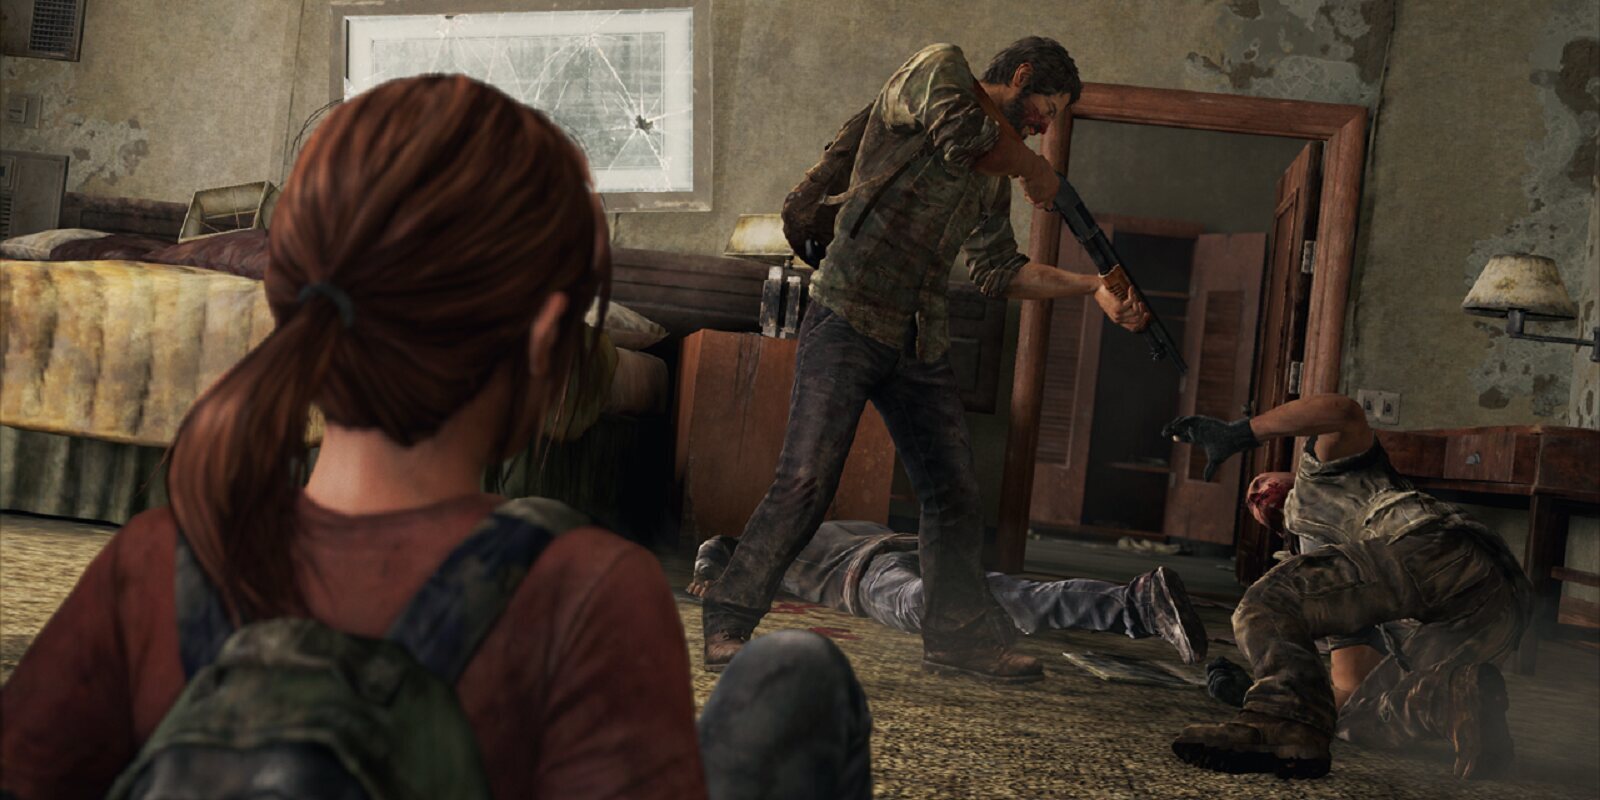 El remake de 'The Last of Us' es real y llegaría en 2022, según un reputado periodista